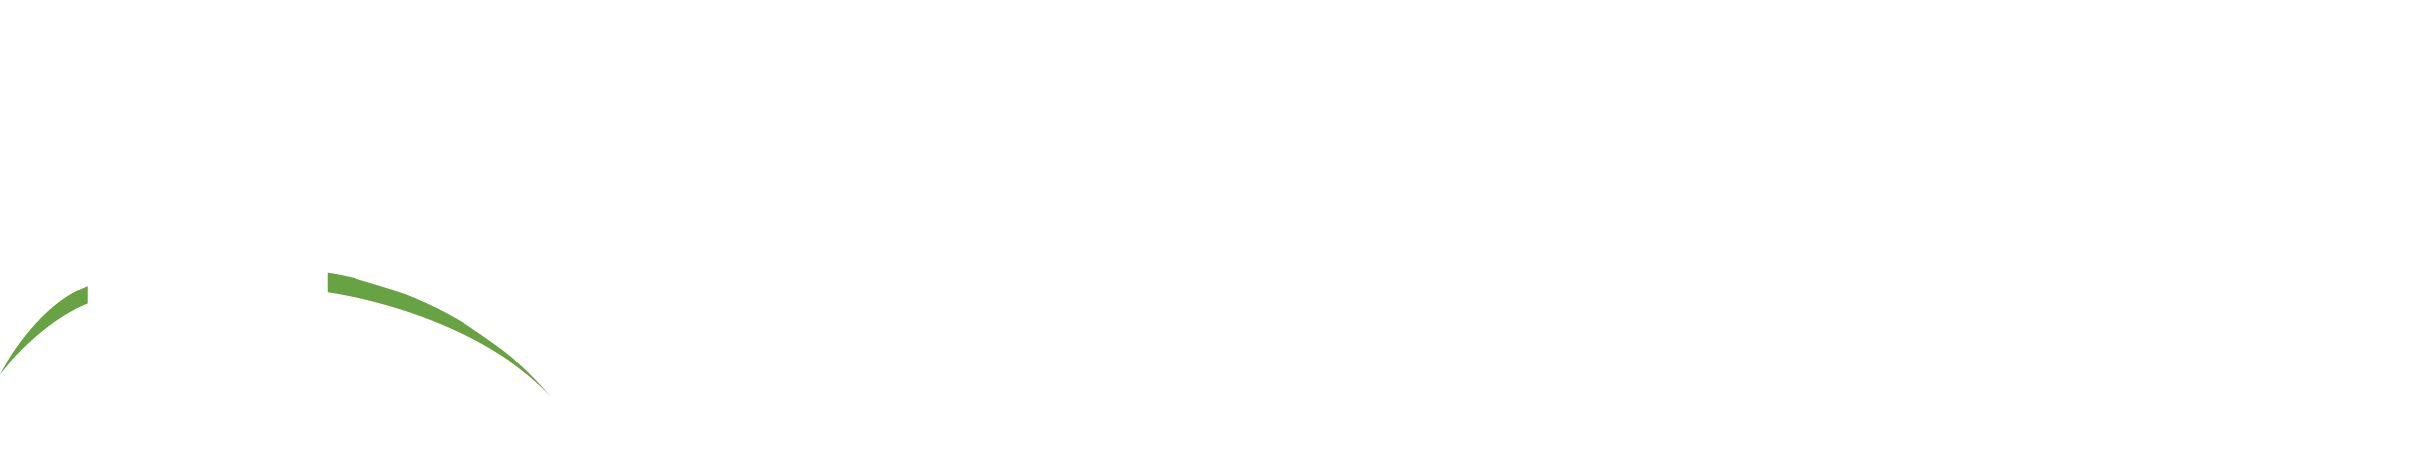 SPERRY – CrissCross Solutions Team | The CrissCross Solutions Team